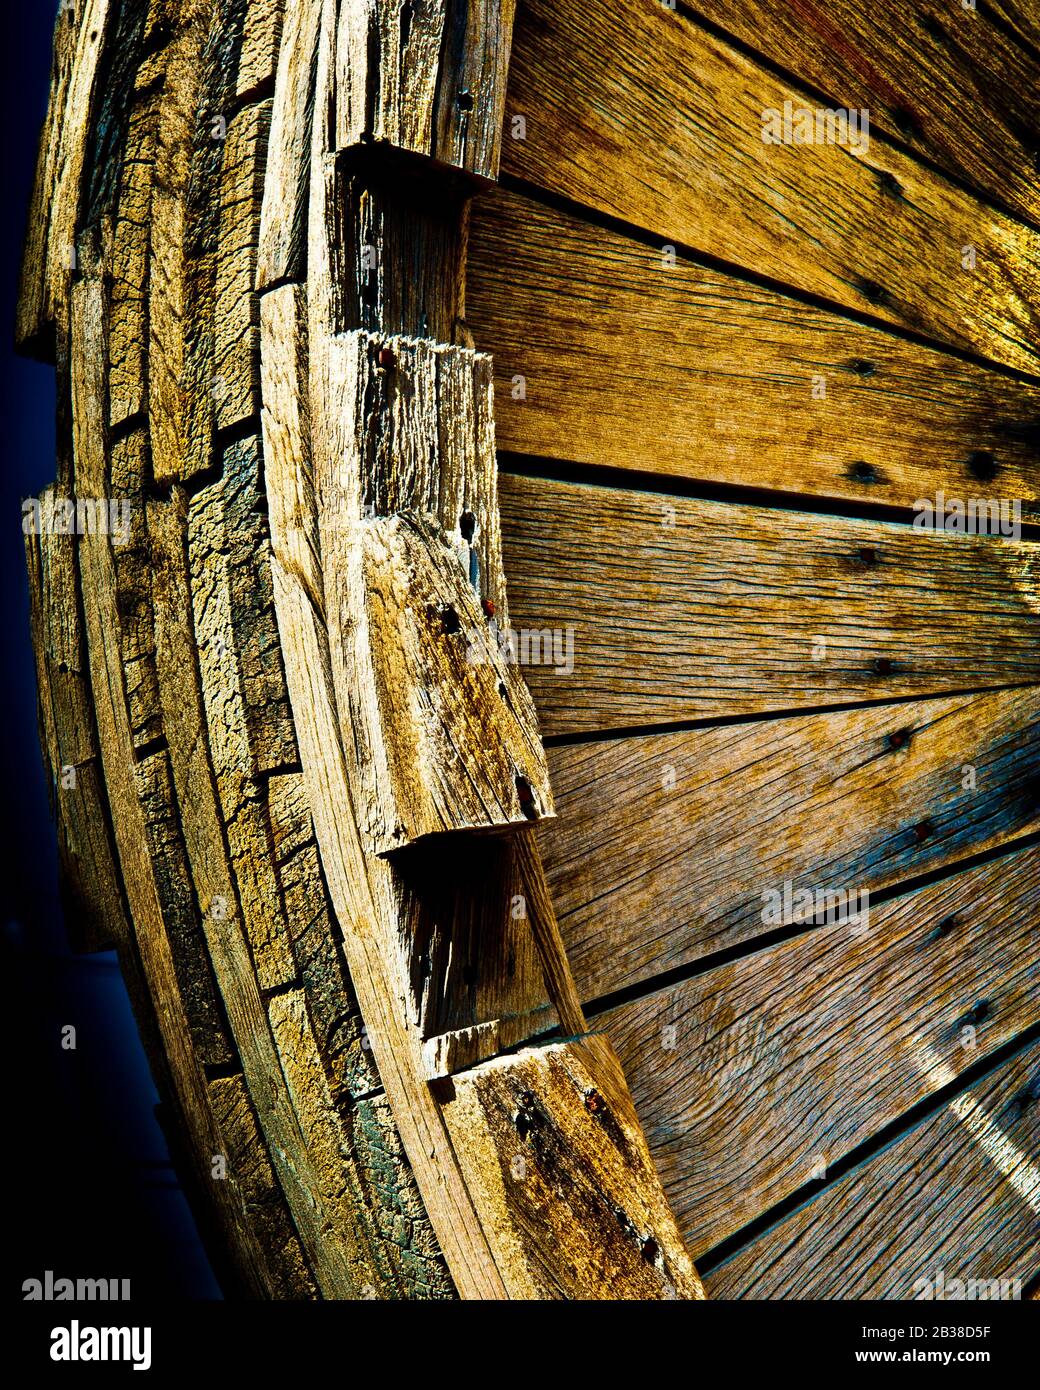 Nahbereich des Holzantriebs, aus flachen Holzlängen, Teil einer alten Stempelfabrik, Bergbaumaschinen. Coulterville, Kalifornien, USA. Stockfoto